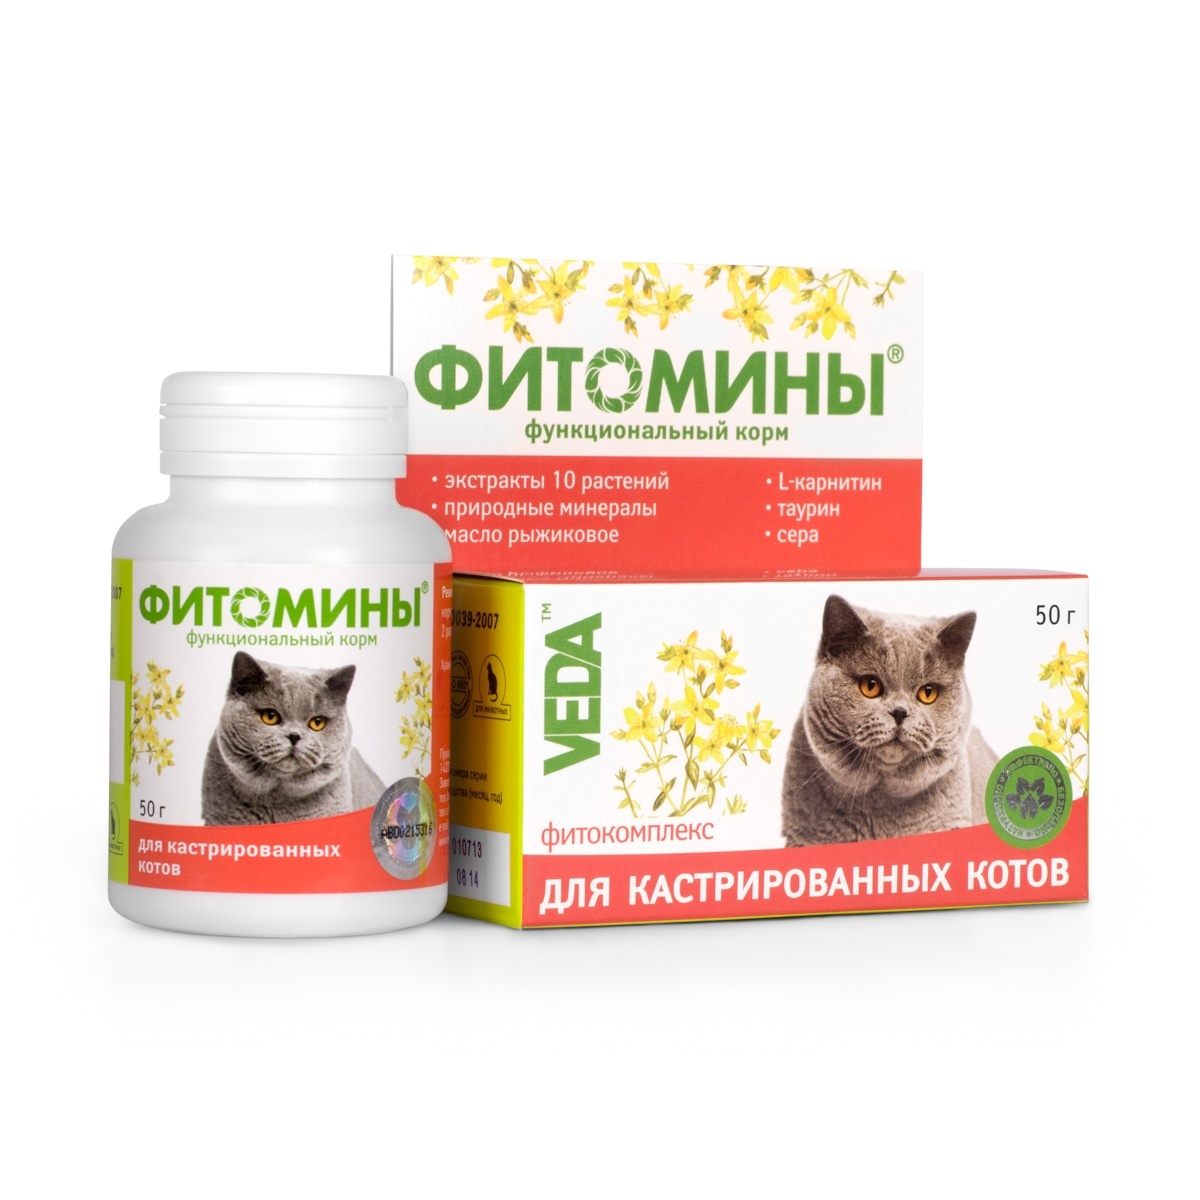 Веда Веда фитомины для кастрированных котов, 100 таб. (50 г) веда фитомины для кастрированых котов 100таб